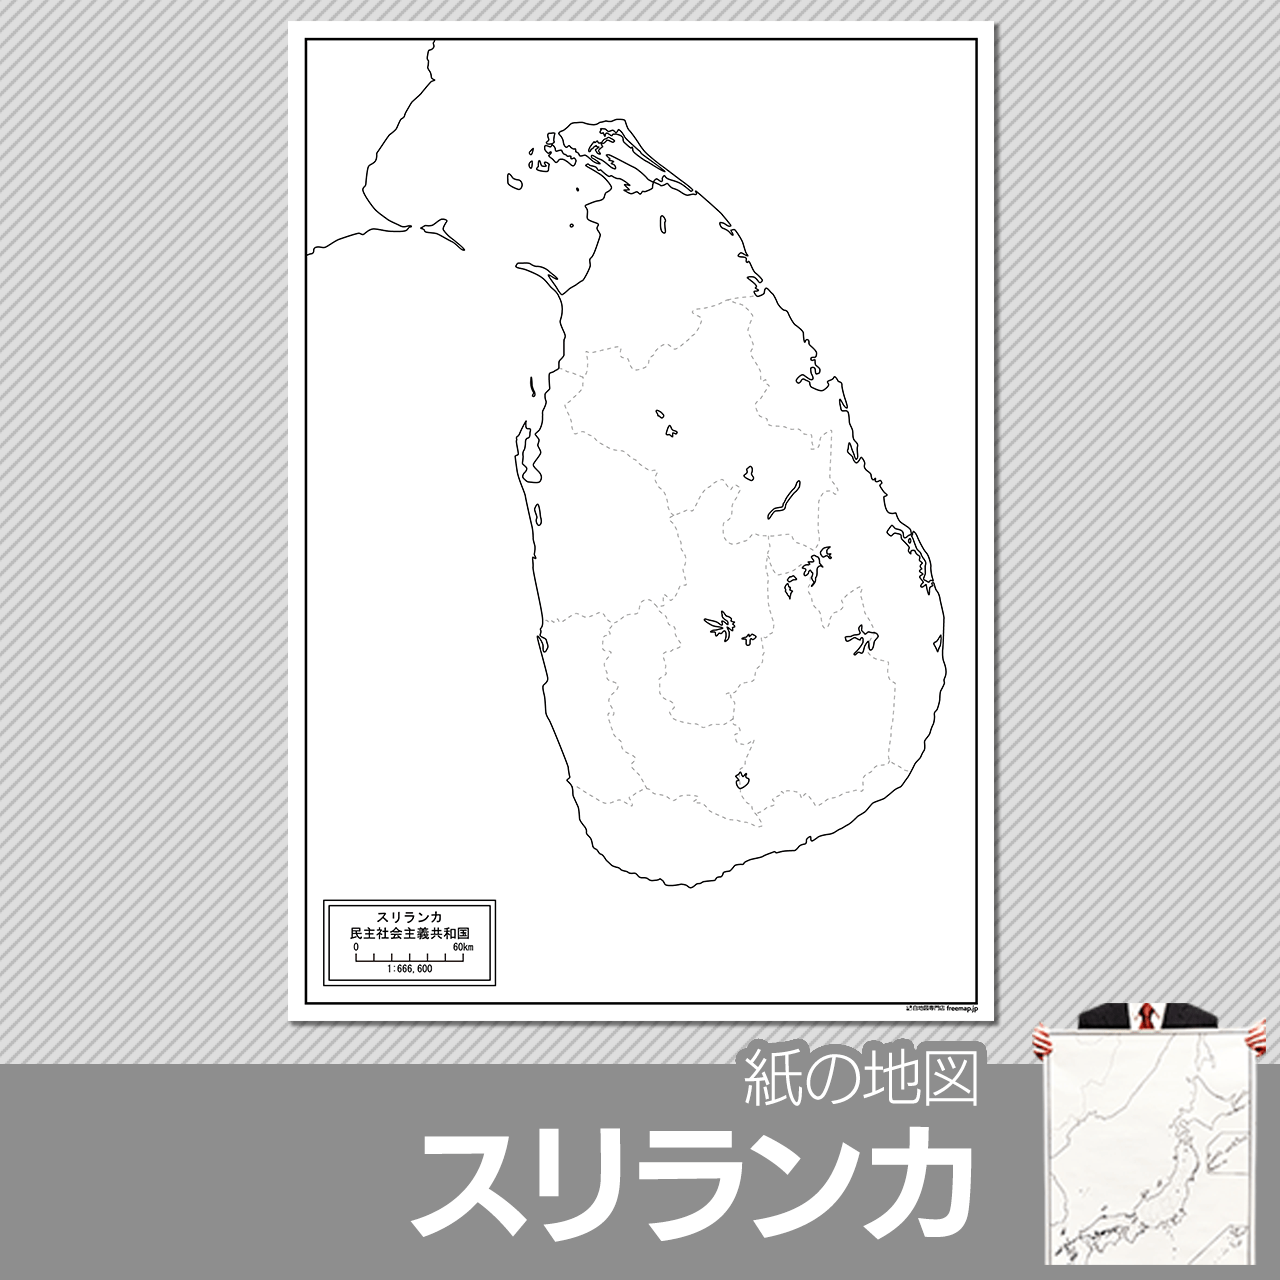 スリランカの紙の白地図のサムネイル